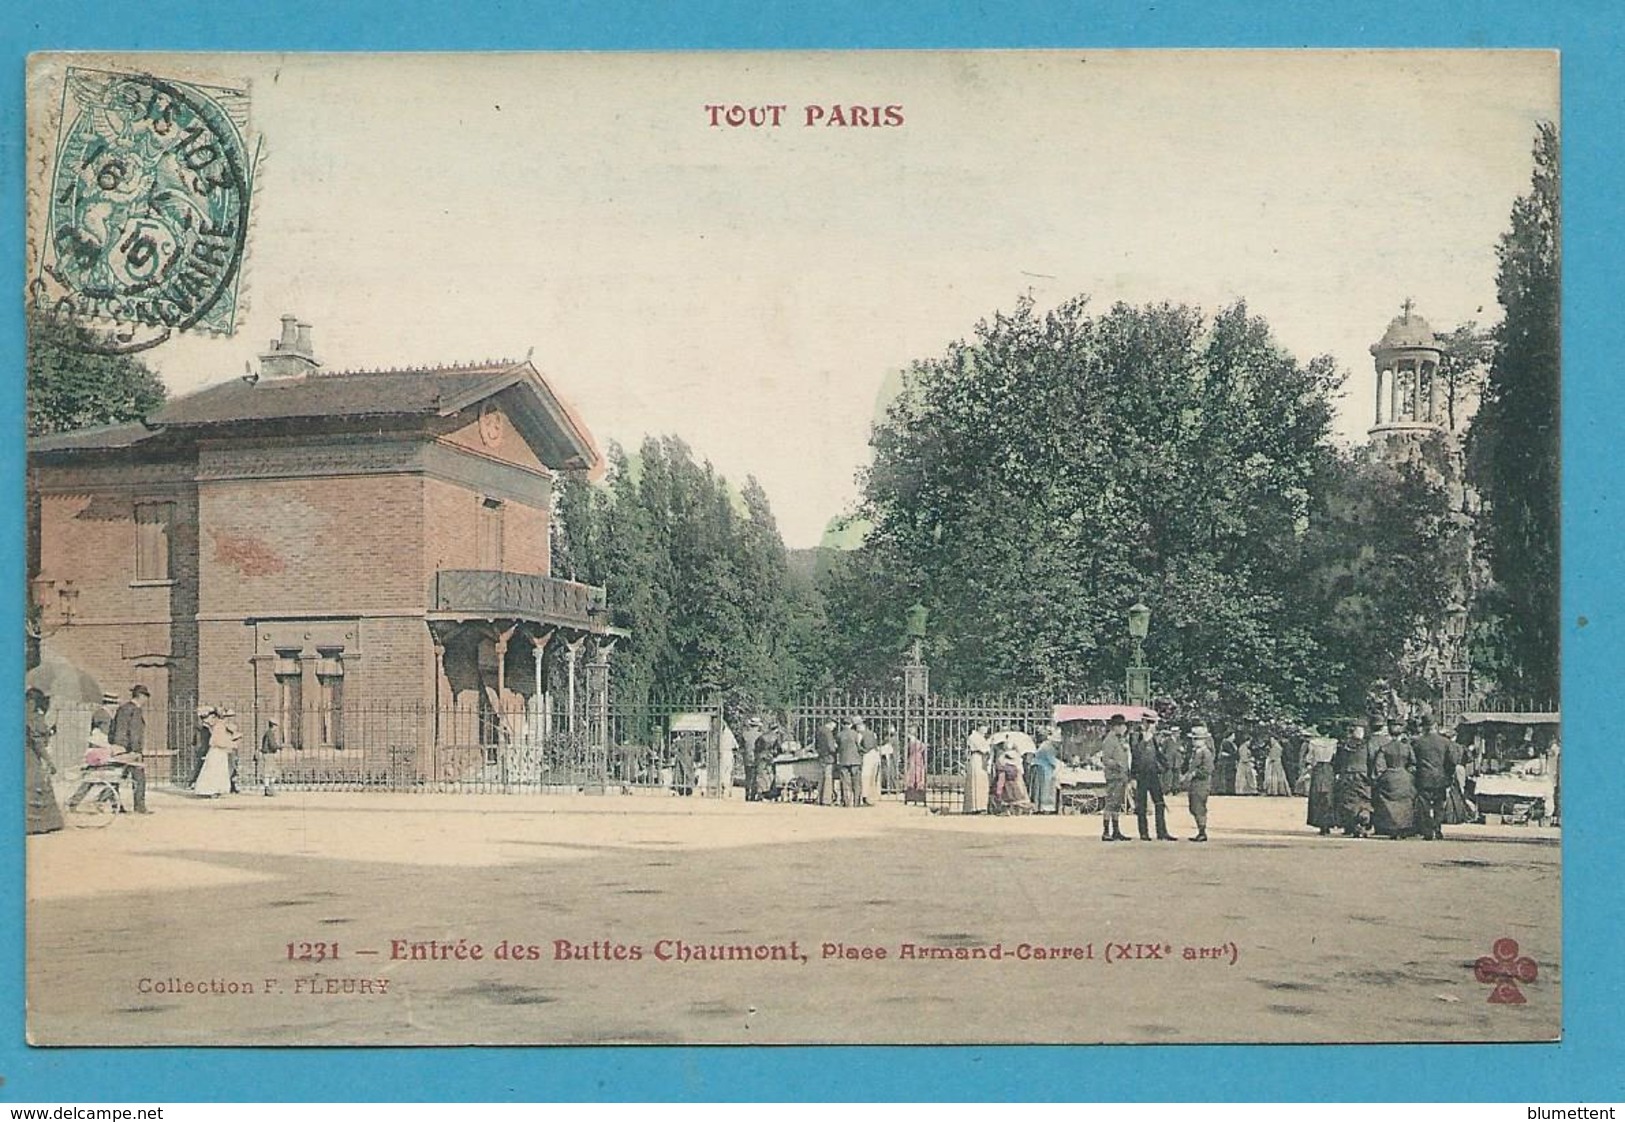 CPA 1231 TOUT PARIS - Entrée Des Buttes-Chaumon Place Armand-Carrel (XIXè Arrt)  Ed.FLEURY - Distretto: 19